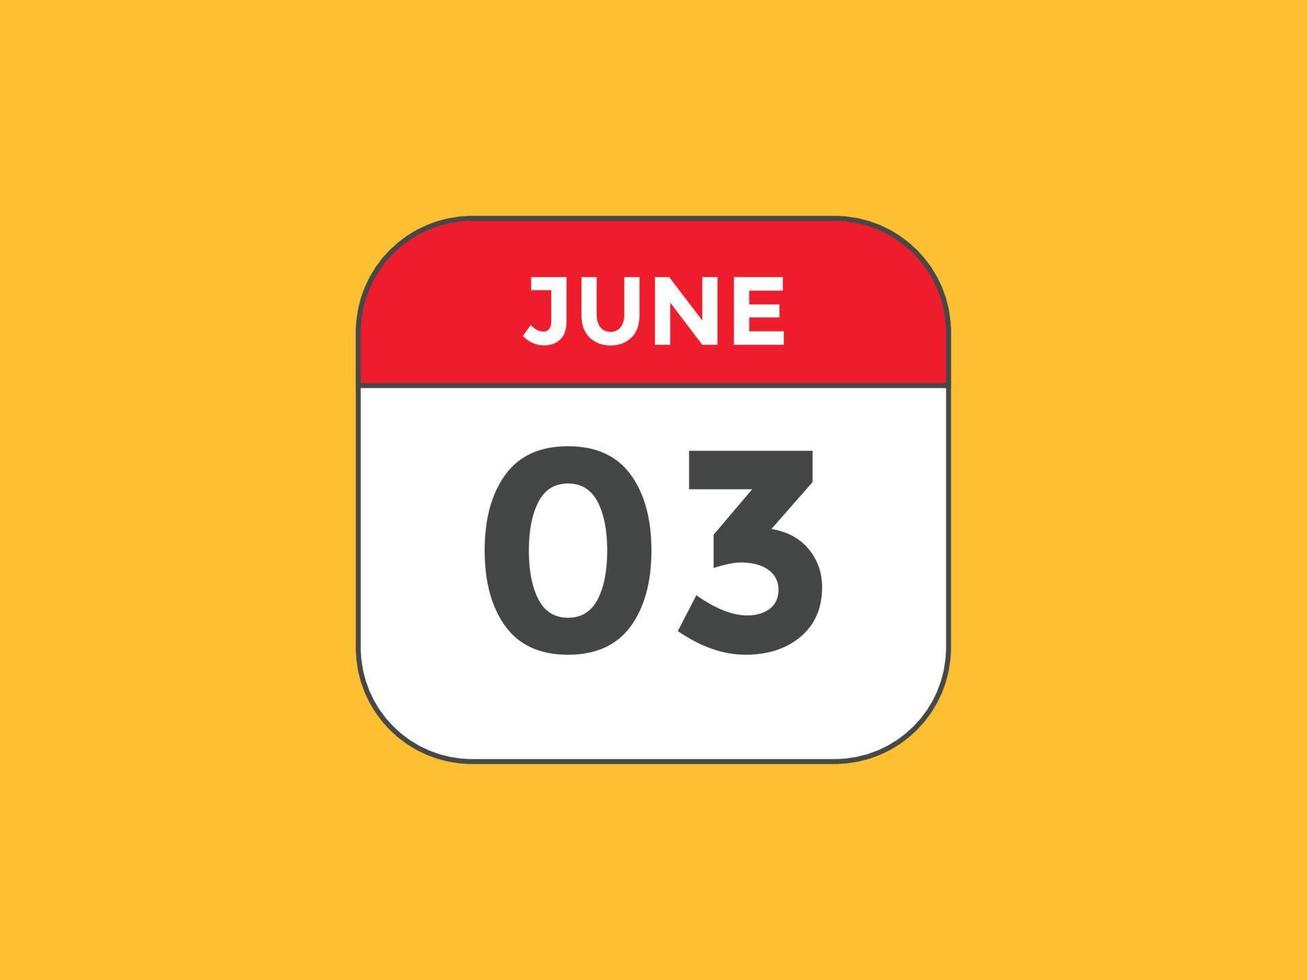 rappel du calendrier du 3 juin. Modèle d'icône de calendrier quotidien du 3 juin. modèle de conception d'icône calendrier 3 juin. illustration vectorielle vecteur